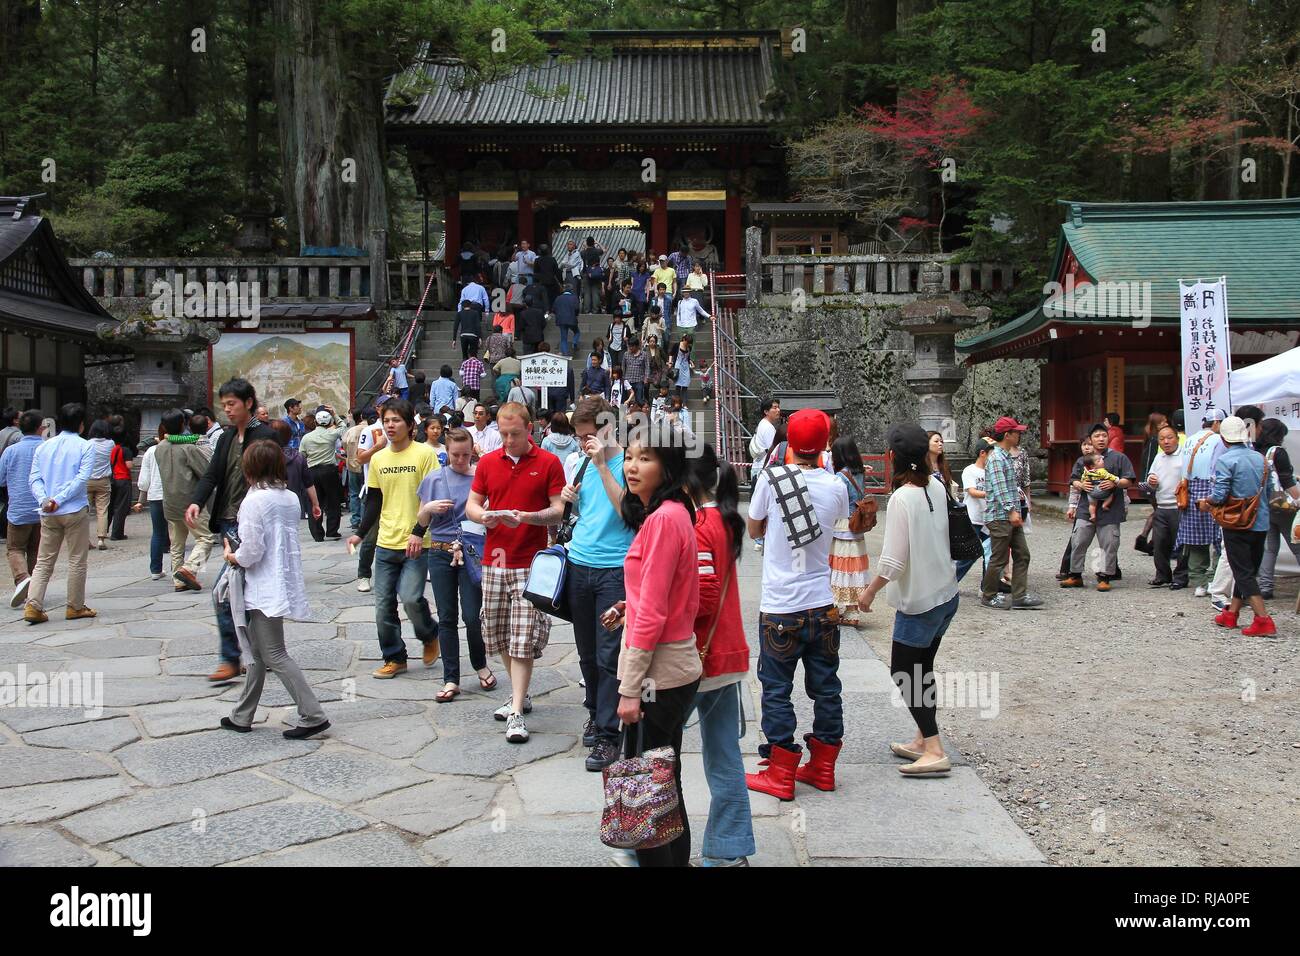 NIKKO, JAPAN - 5. Mai: die Menschen besuchen Tosho-gu Schrein am 5. Mai 2012 in Nikko, Japan. Toshogu ist Teil der UNESCO-Weltkulturerbe Gruppe sehr impo Stockfoto